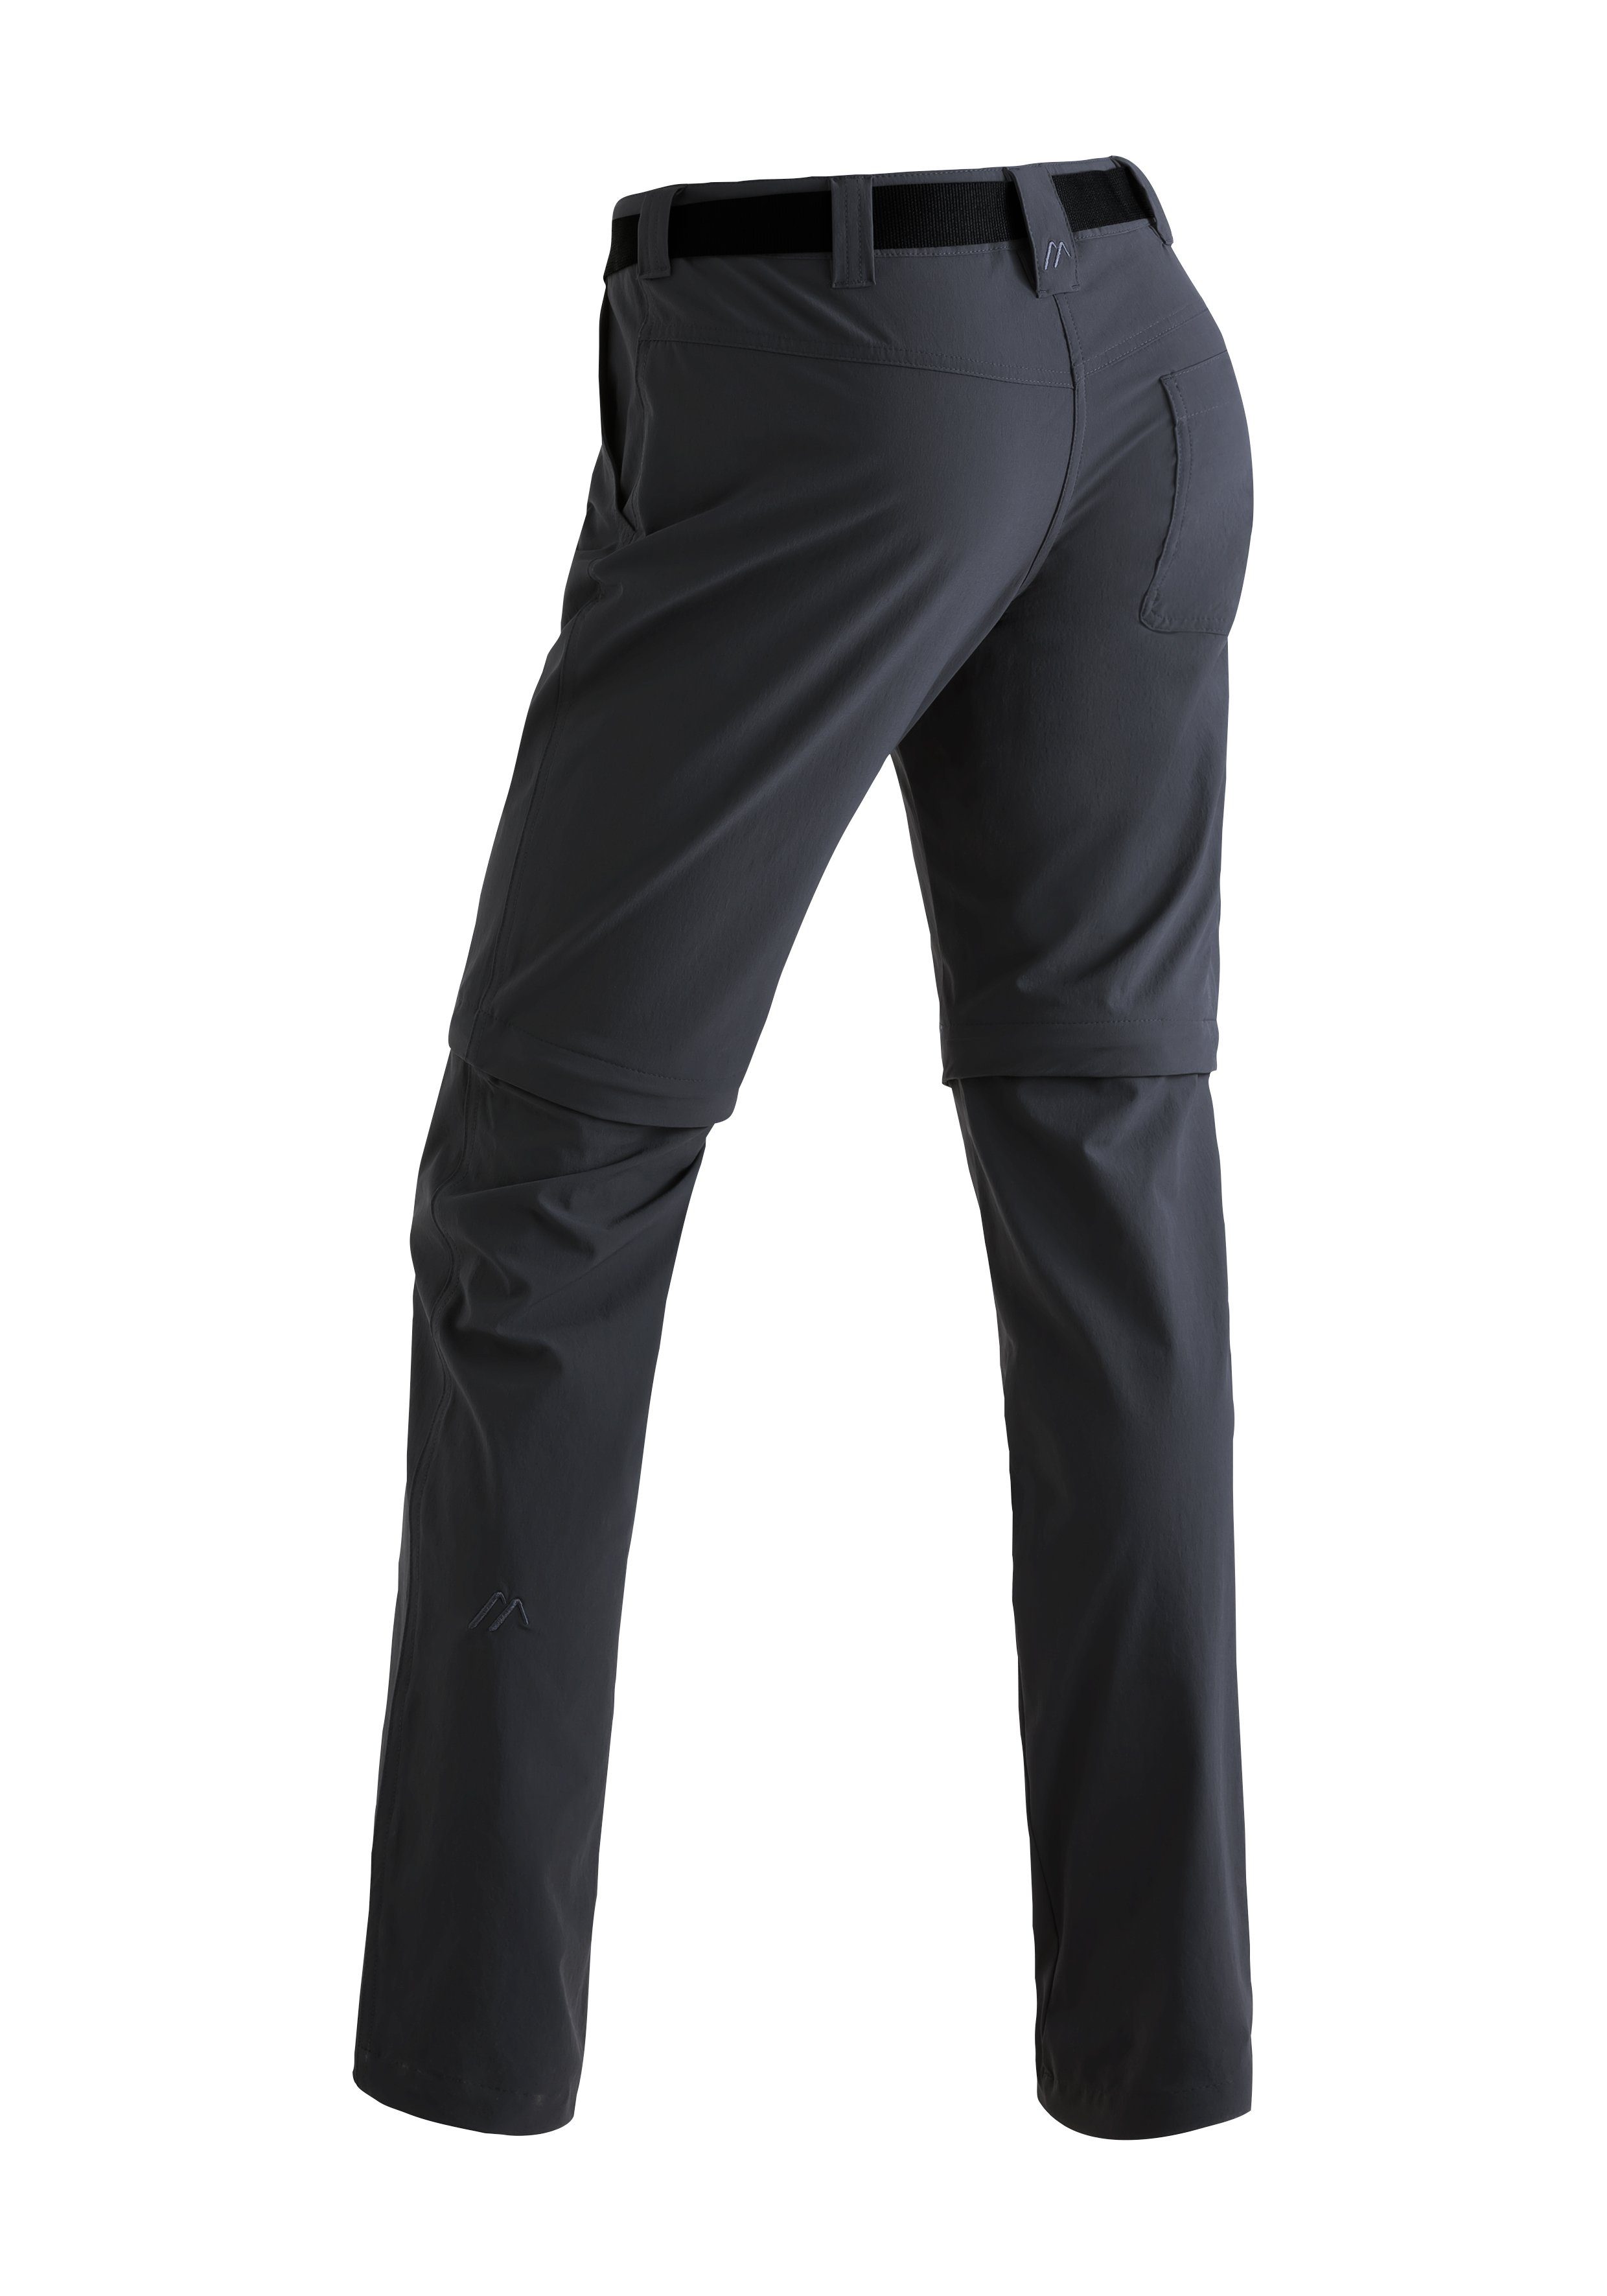 Funktionshose Sports Damen zipp-off Maier Outdoor-Hose schwarz atmungsaktive Wanderhose, slim Inara zip